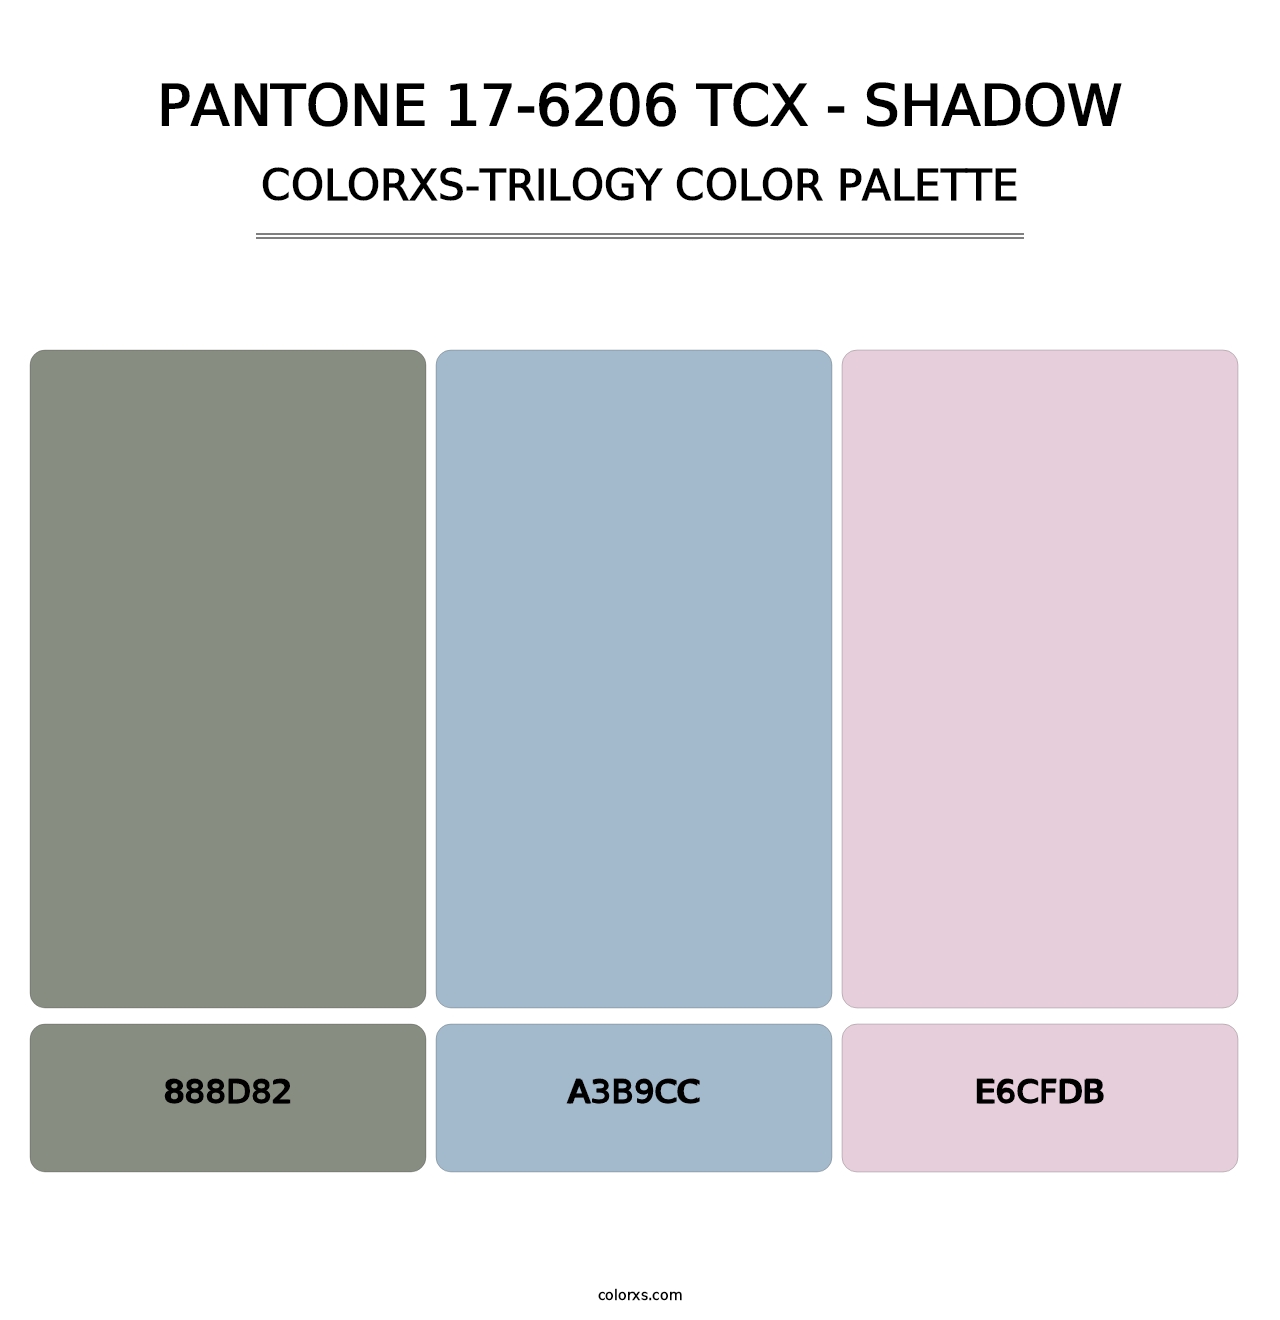 PANTONE 17-6206 TCX - Shadow - Colorxs Trilogy Palette